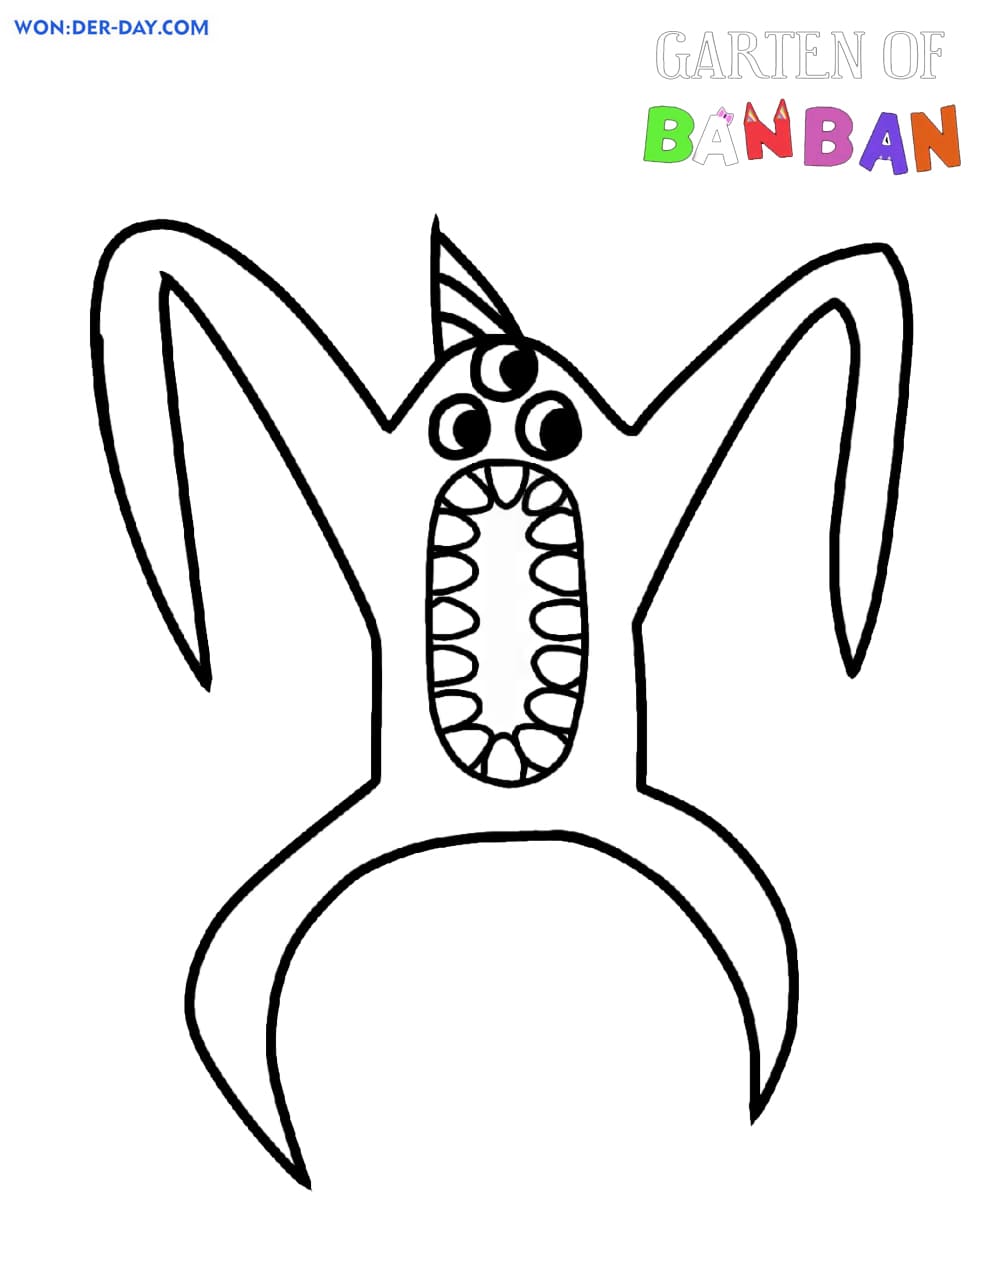 Página colorida do jardim de personagens de Banban - páginas para colorir  gratuitas para impressão